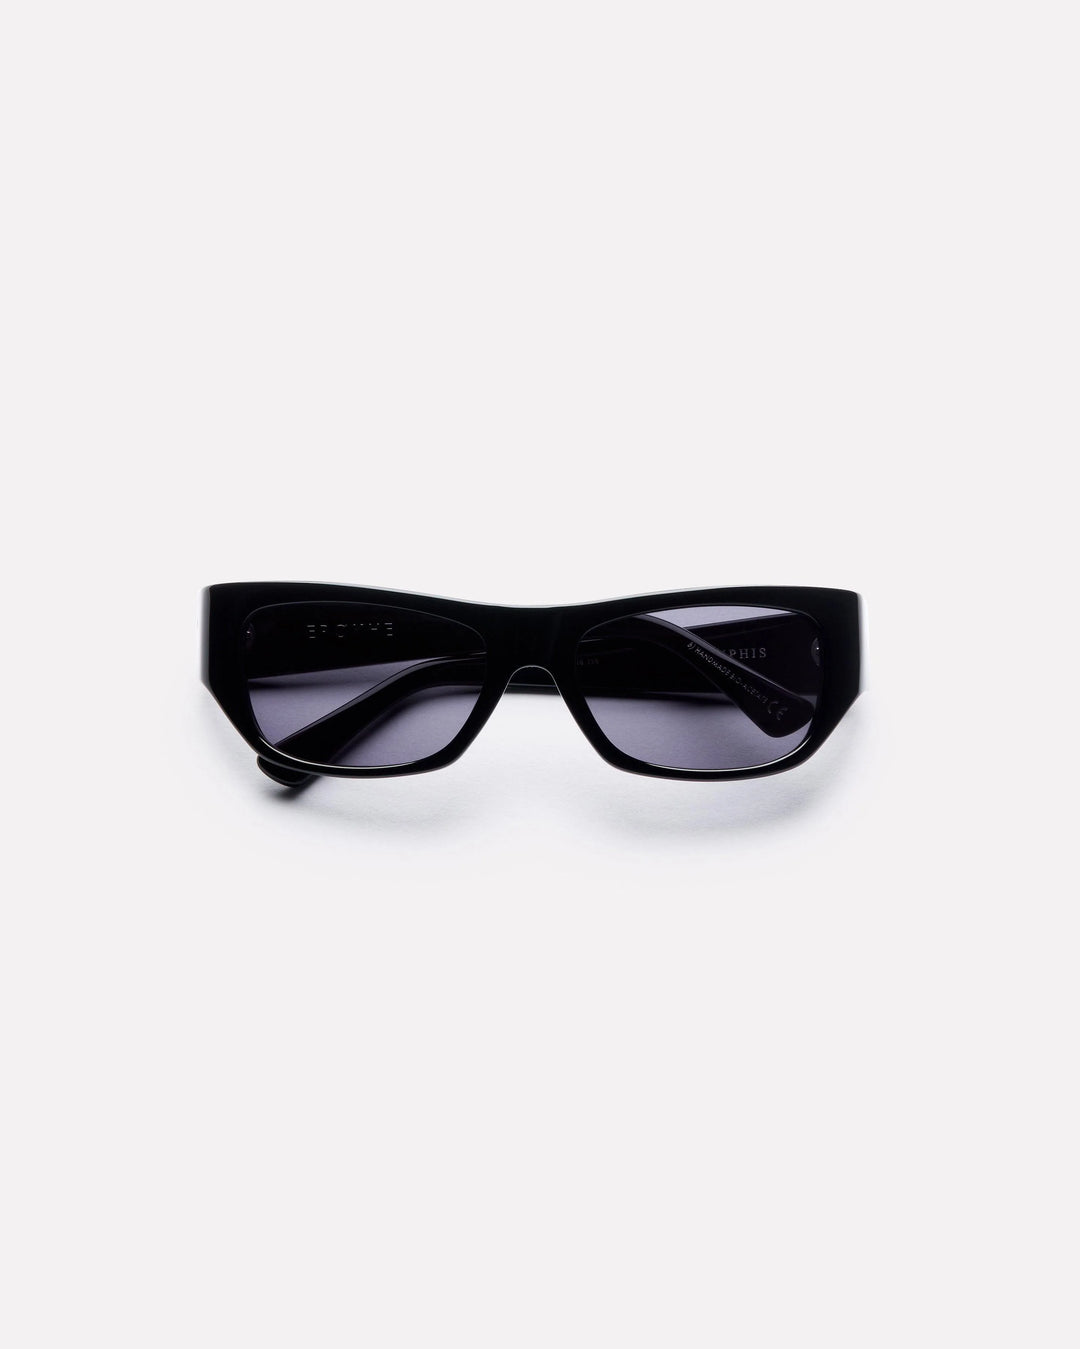 Epokhe Memphis Sunglasses- Black Polished/Black